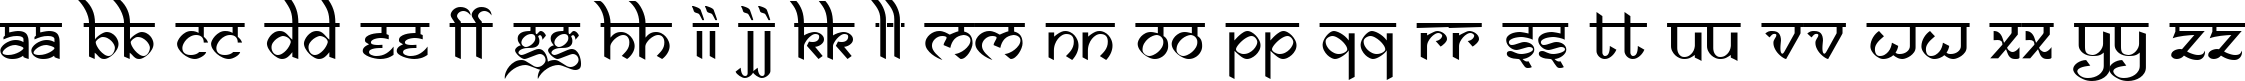 Пример написания английского алфавита шрифтом DS Izmir Normal